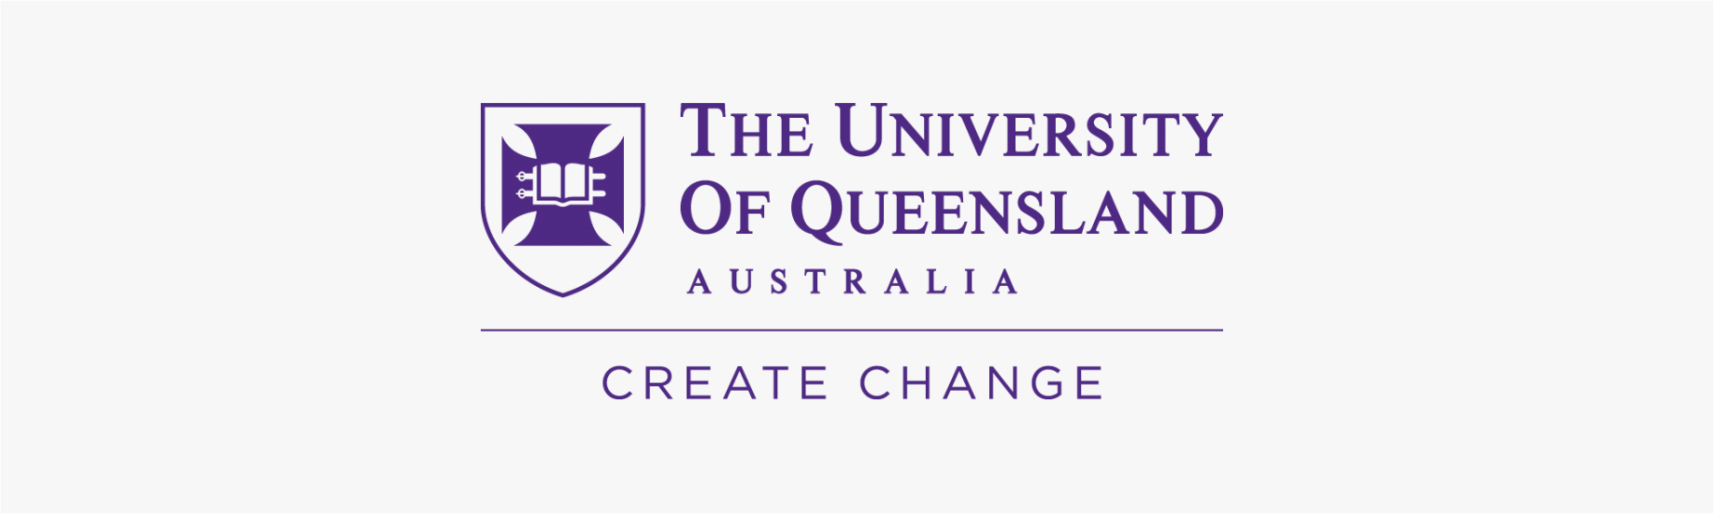 university of queenland study in australia